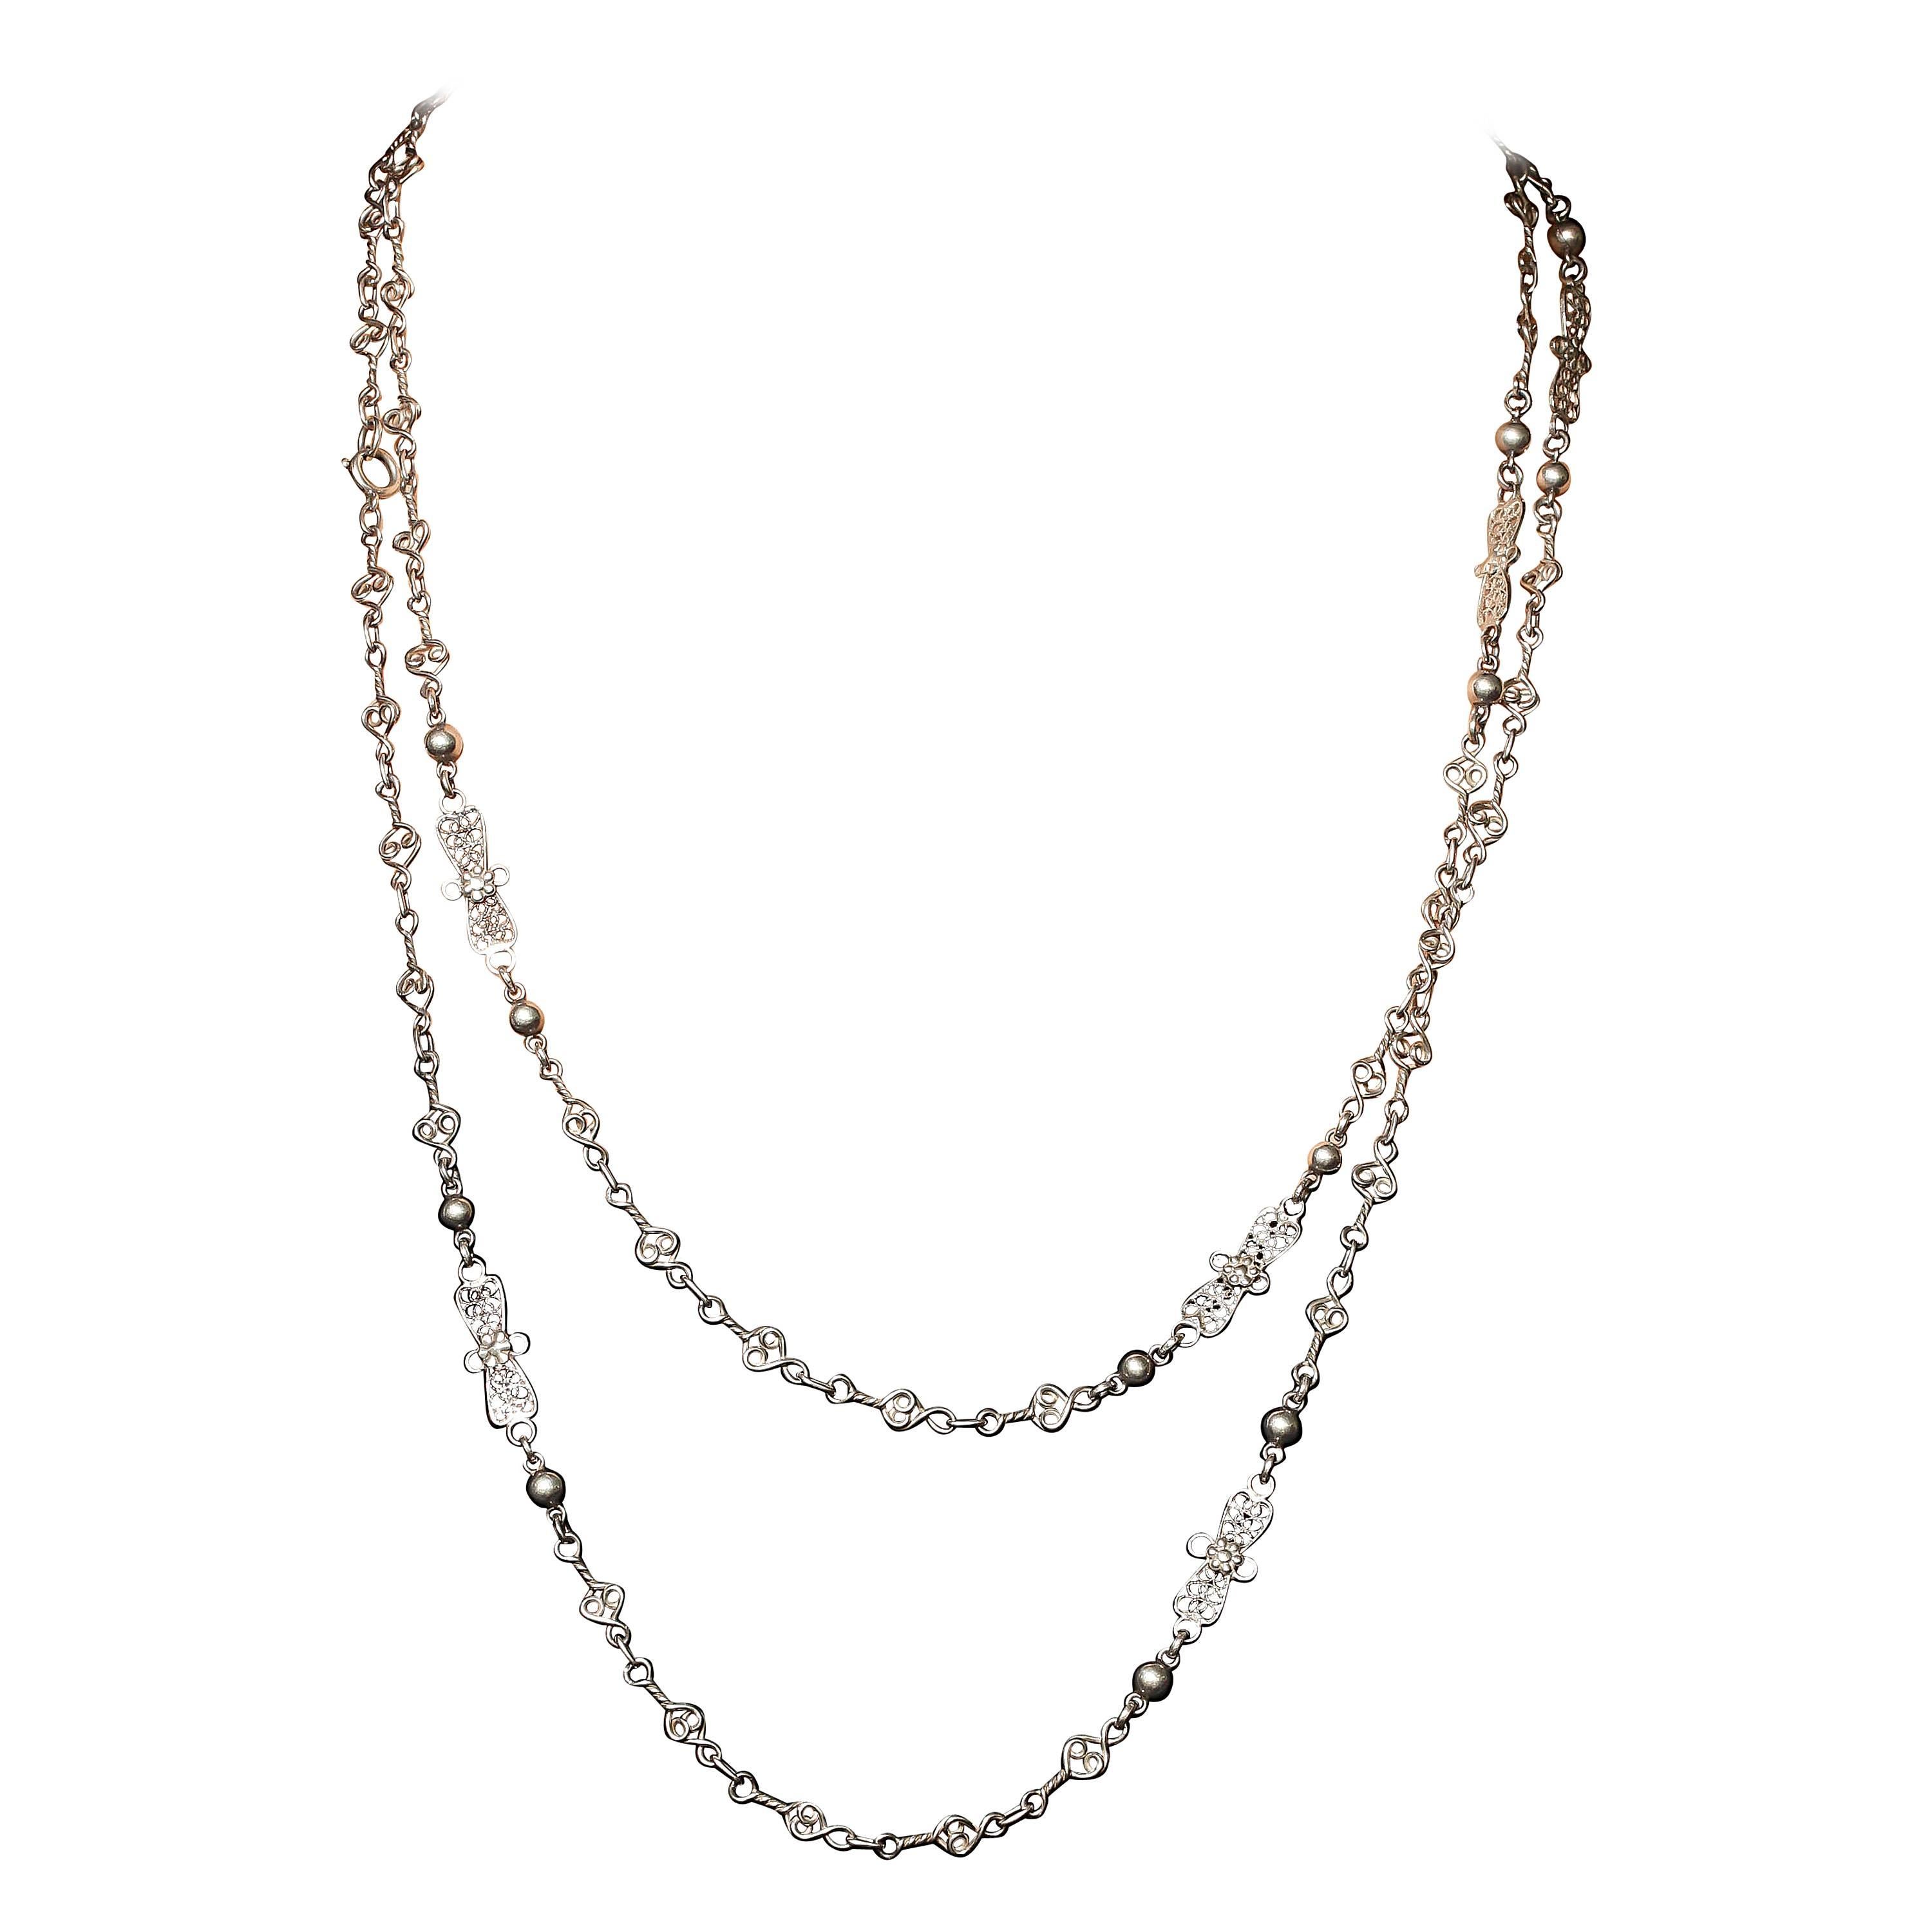 1900 Silver Filigree Chain Necklace